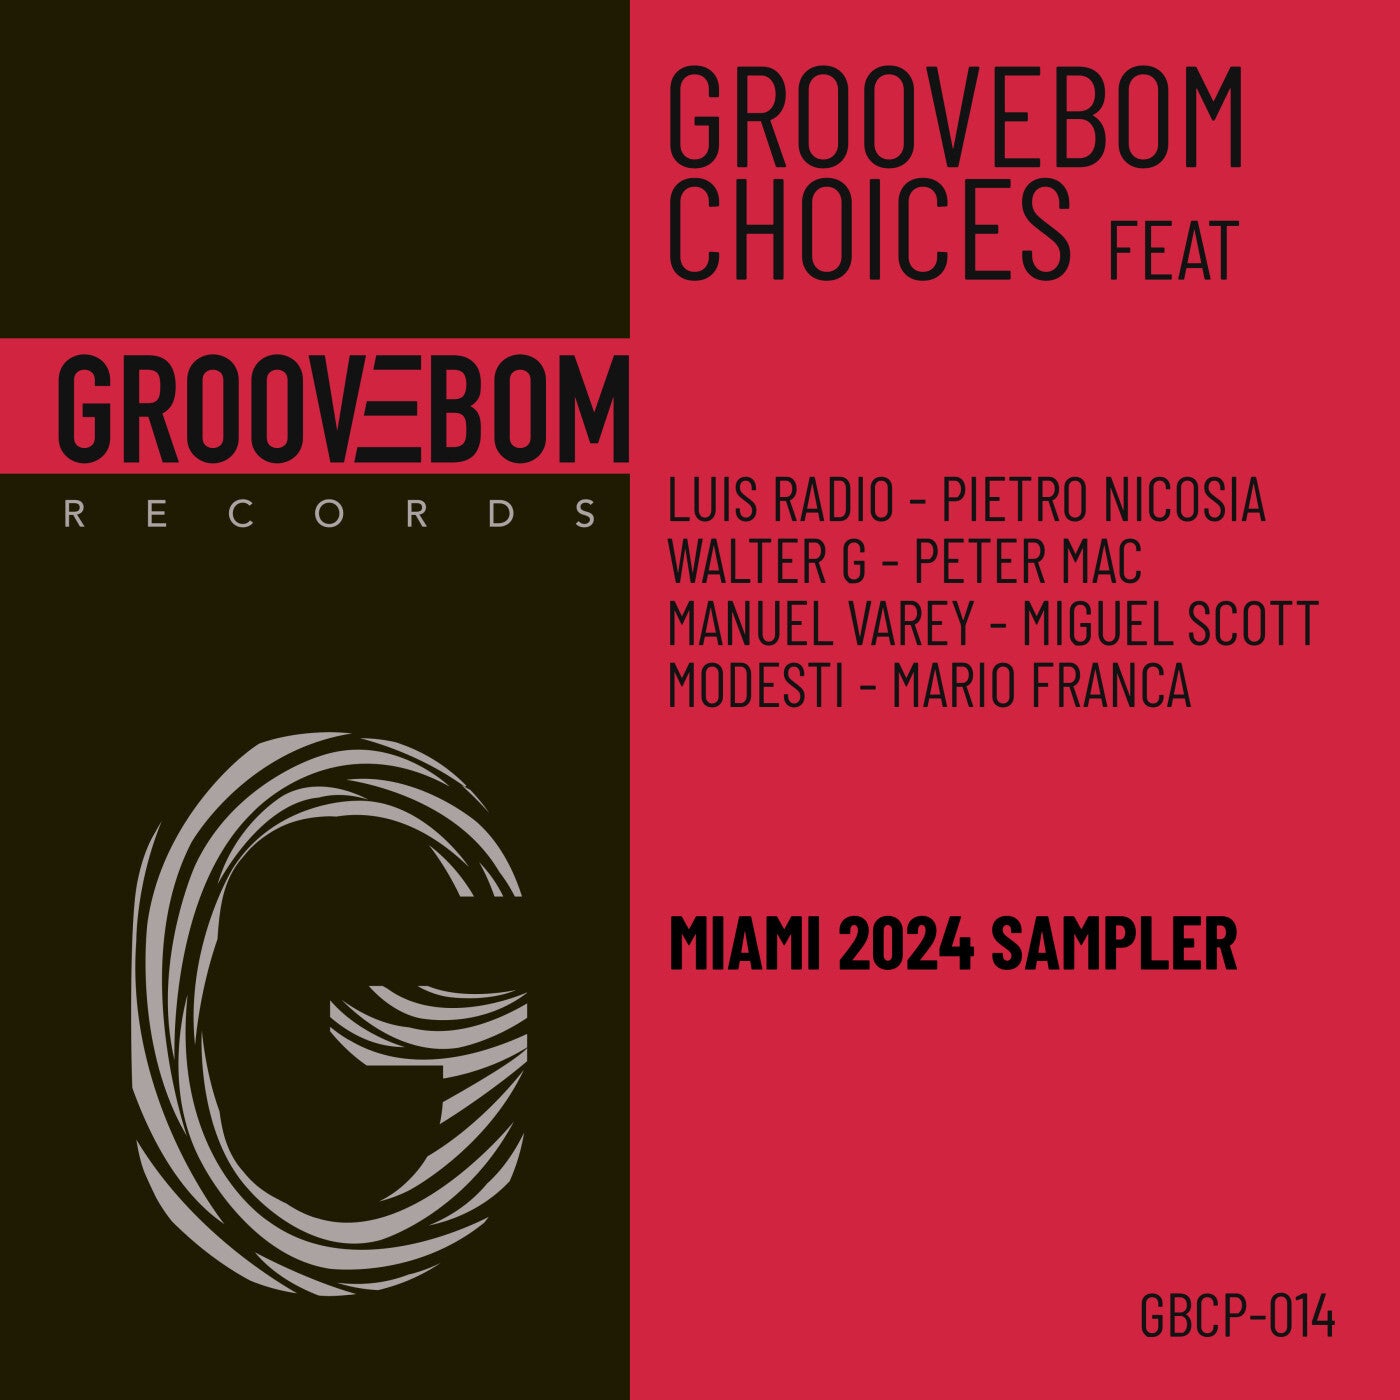 Groovebom Choices